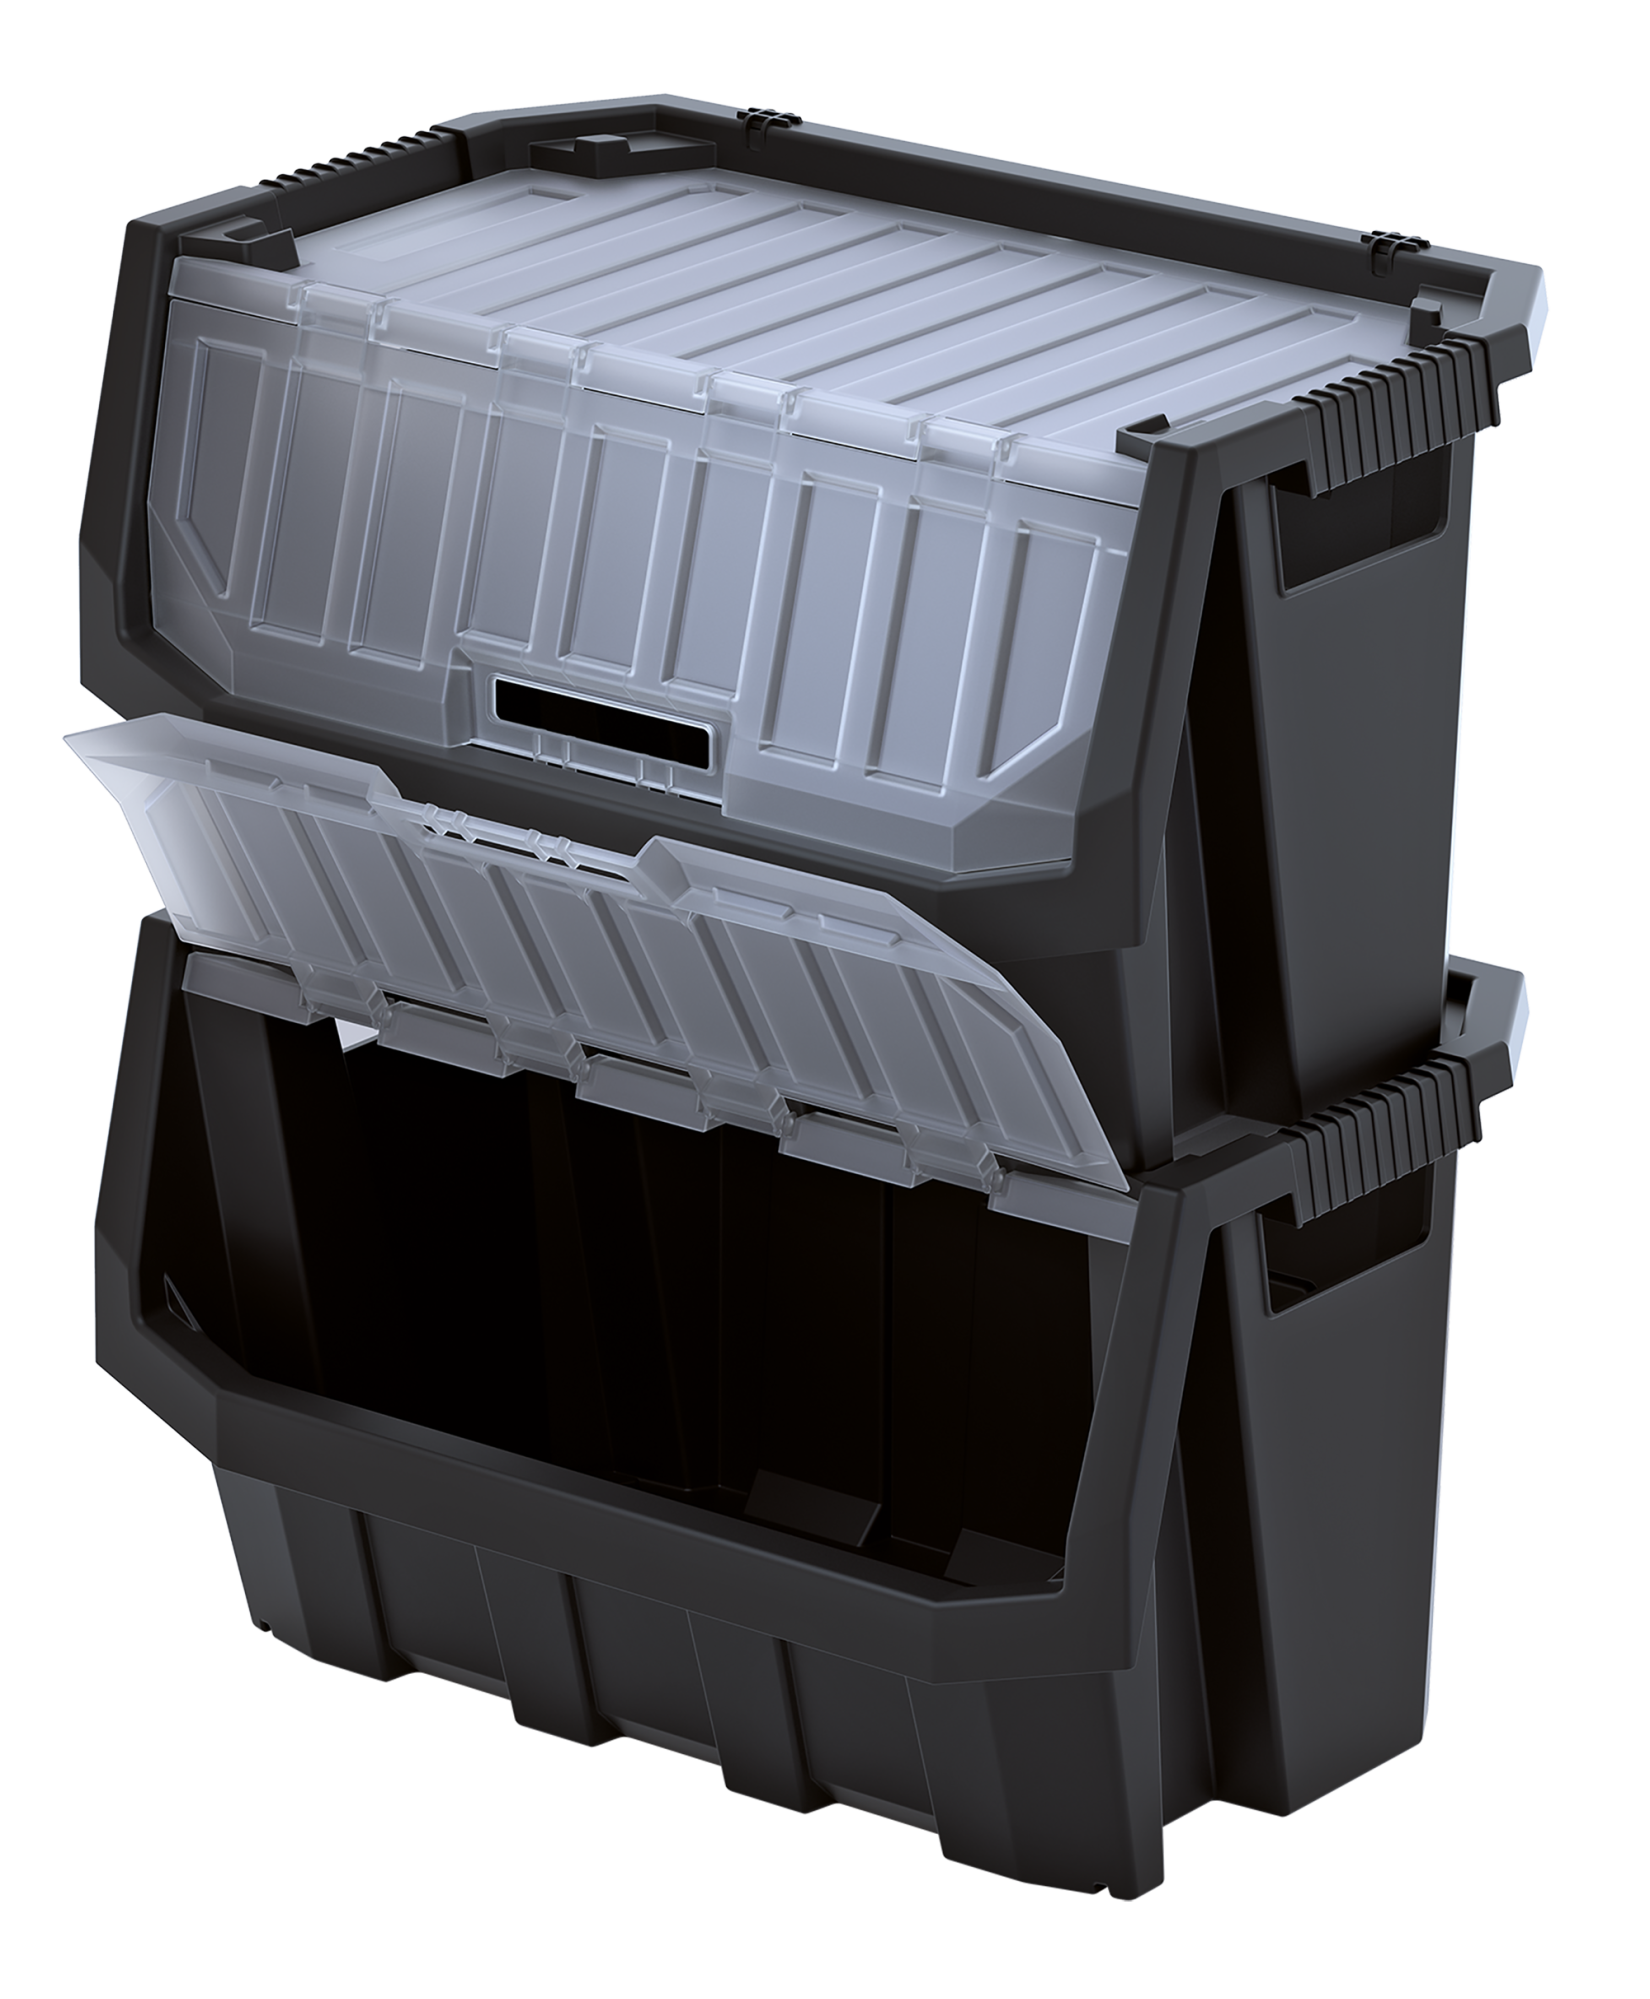 Truck max plus - storage bin